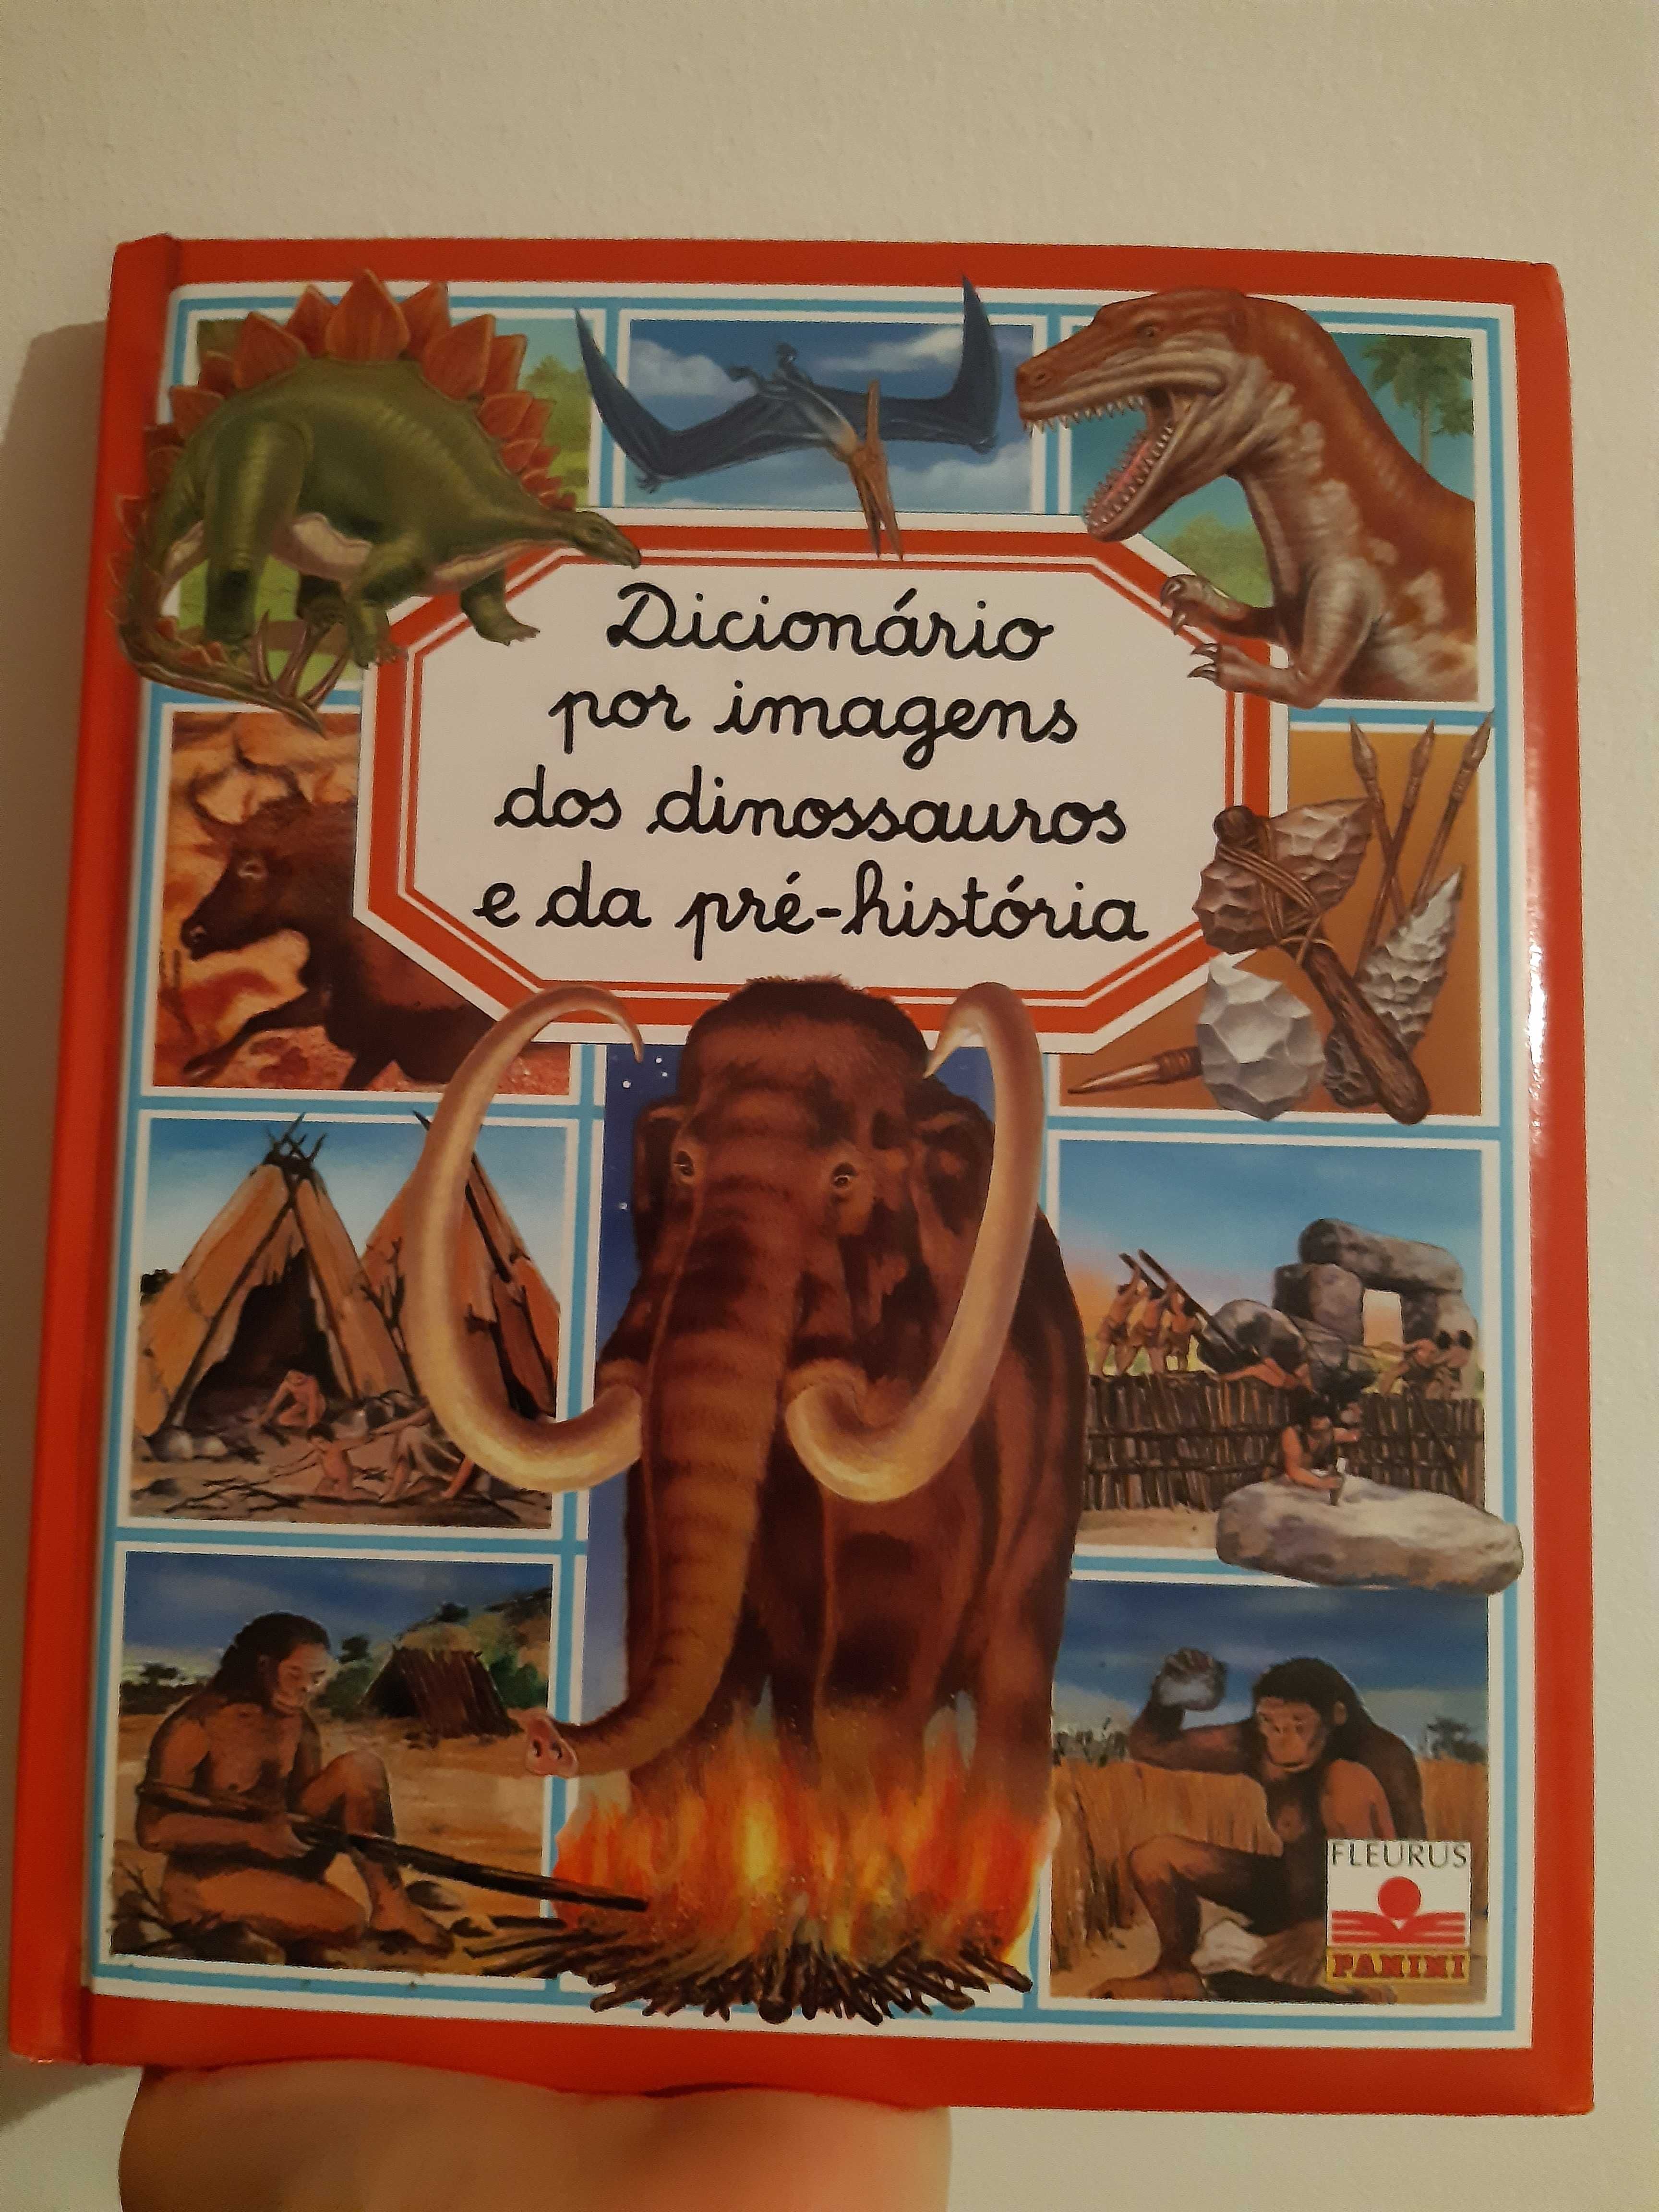 Dicionario por imagens dos dinossauros e da pre-historia